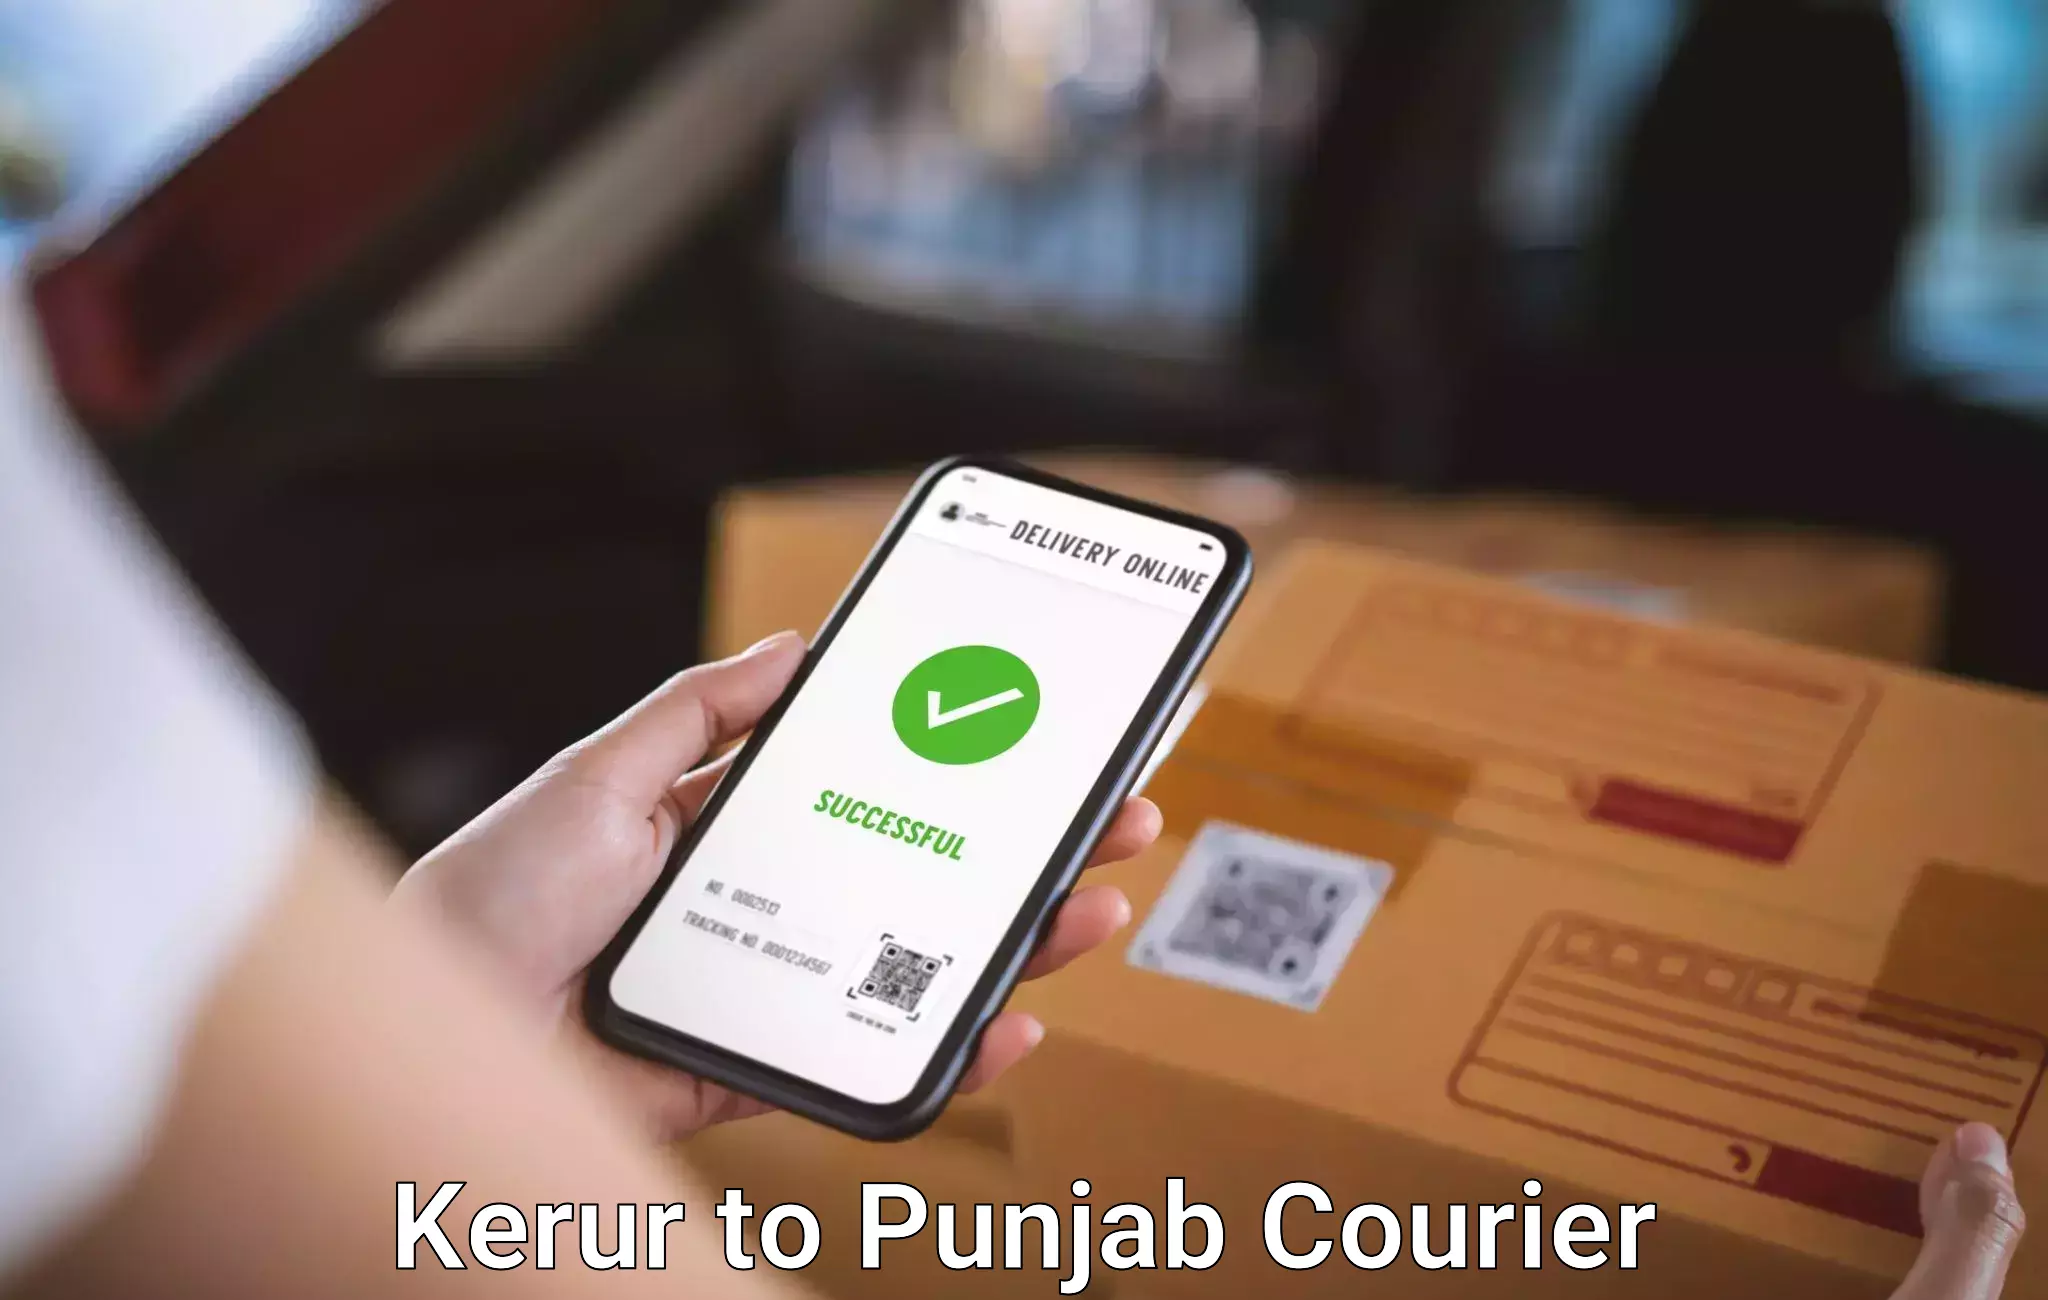 Doorstep luggage pickup Kerur to Punjab